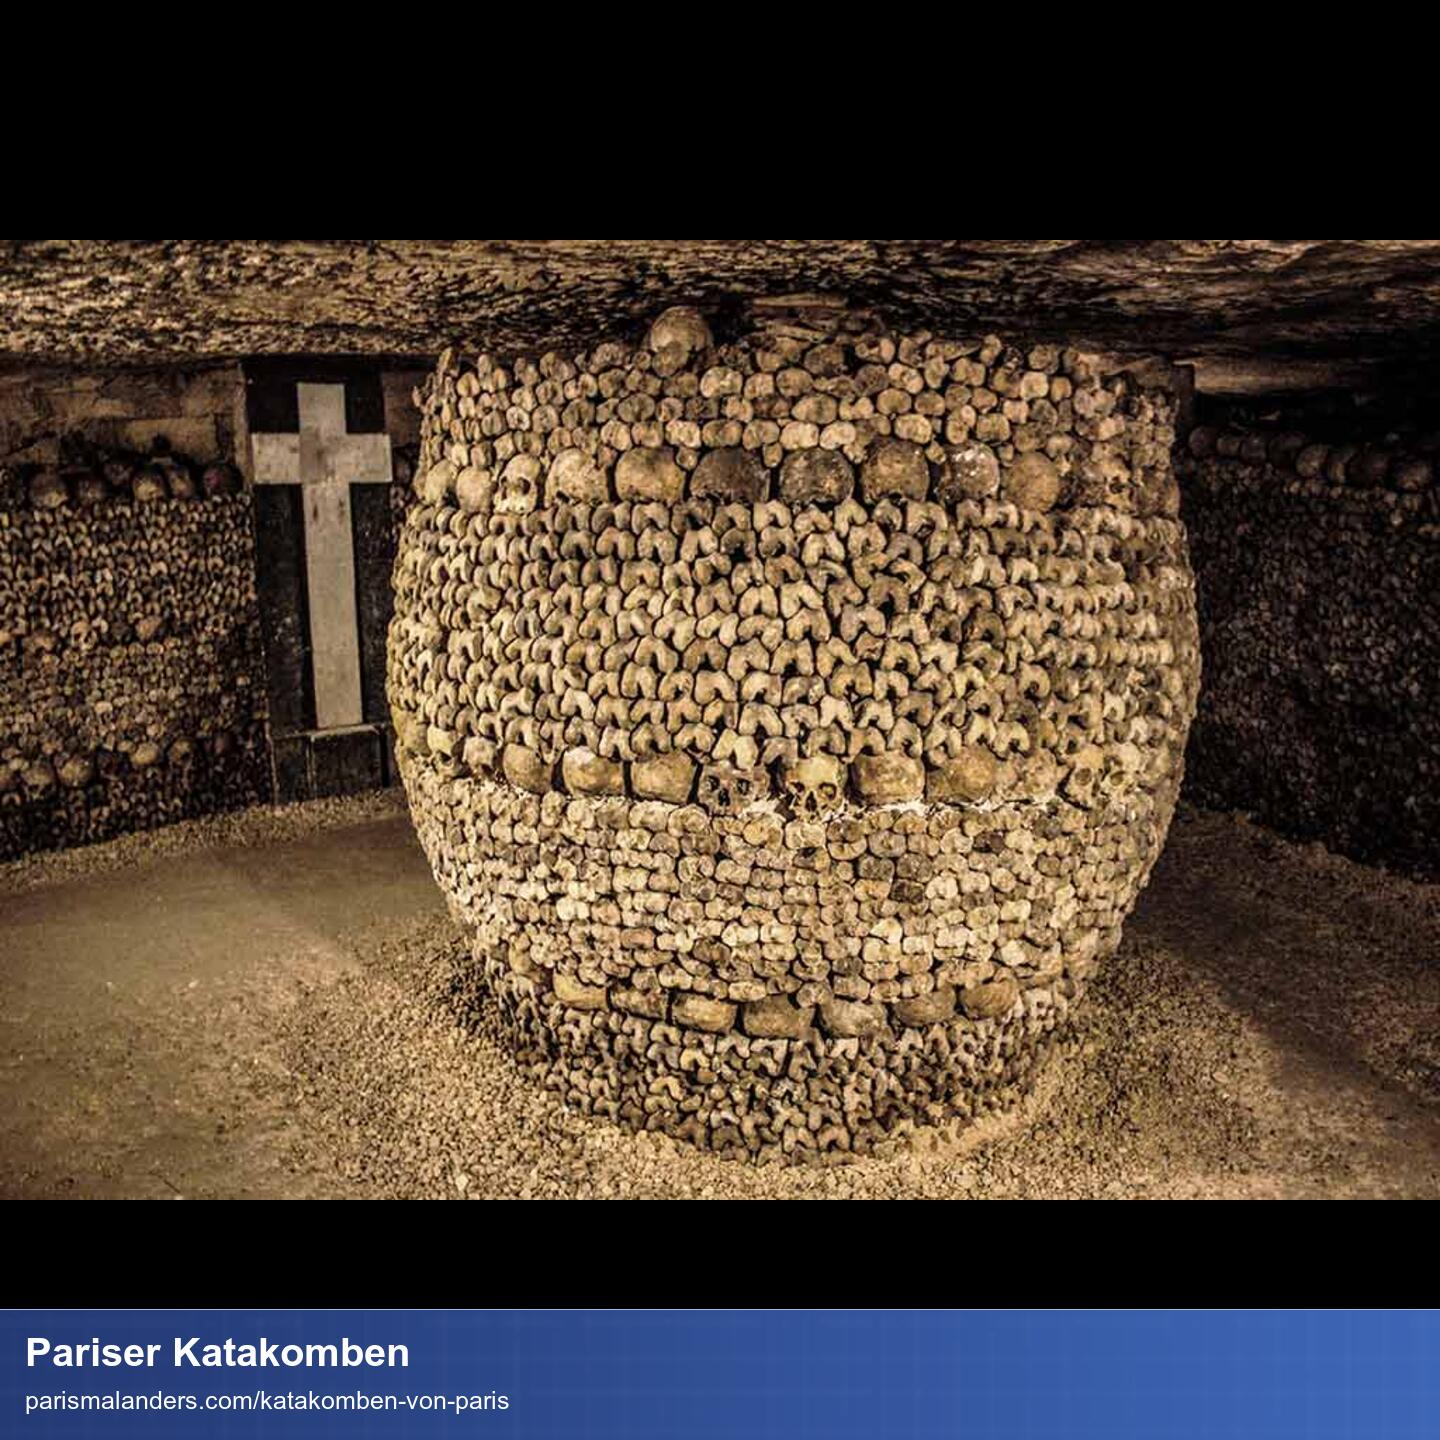 Foto der Katakomben. Die Wände vollgestapelt mit Knochen. In der Mitte eine runde Säule die auch komplett von aufgestalpenten Knochen gebildet wird.